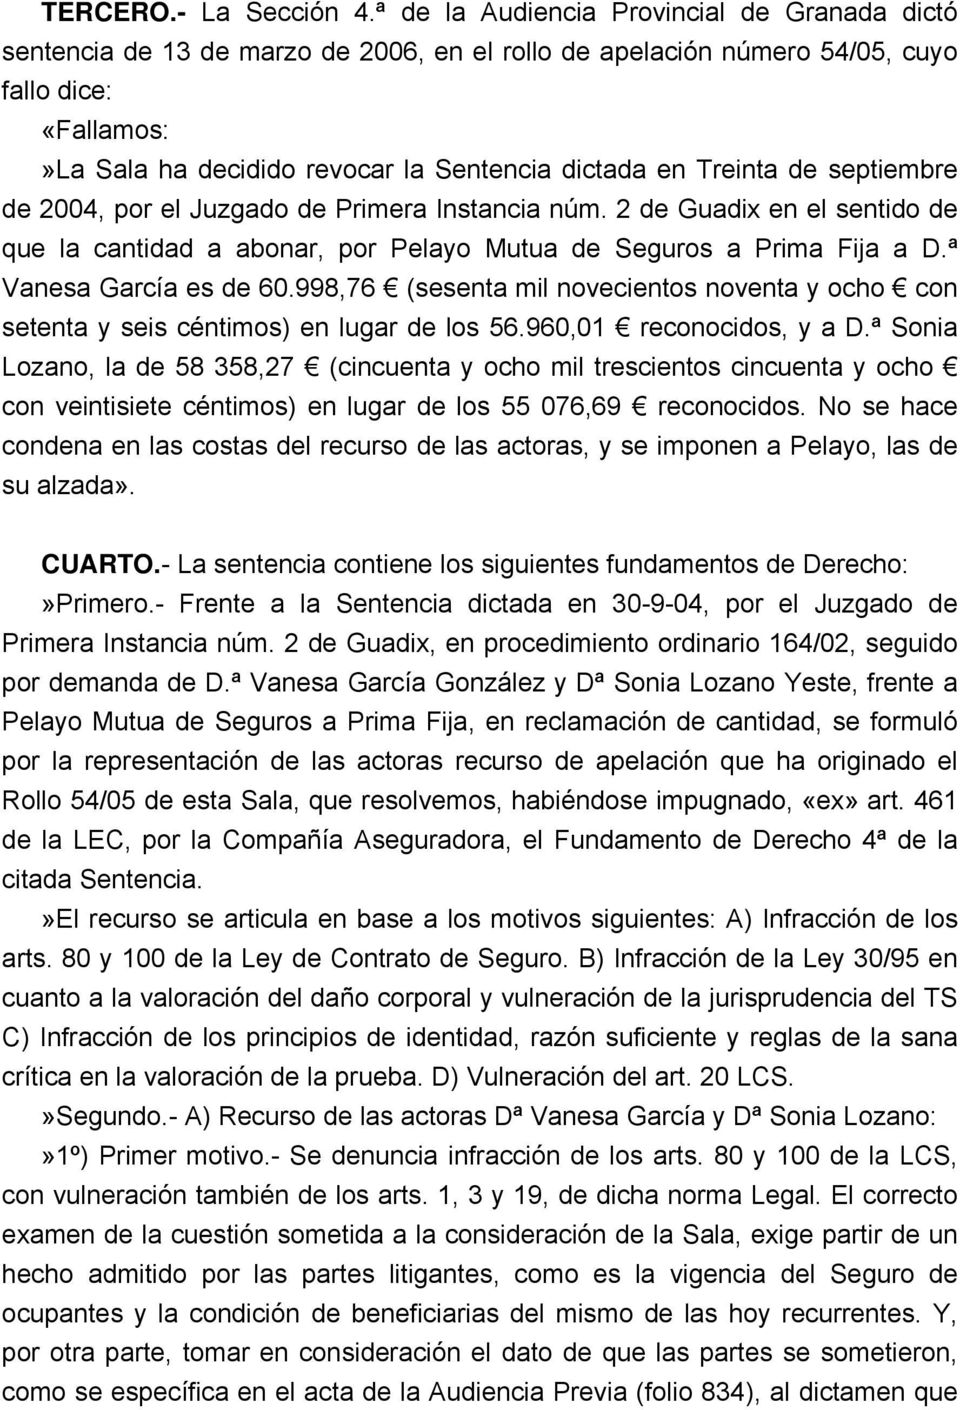 Treinta de septiembre de 2004, por el Juzgado de Primera Instancia núm. 2 de Guadix en el sentido de que la cantidad a abonar, por Pelayo Mutua de Seguros a Prima Fija a D.ª Vanesa García es de 60.